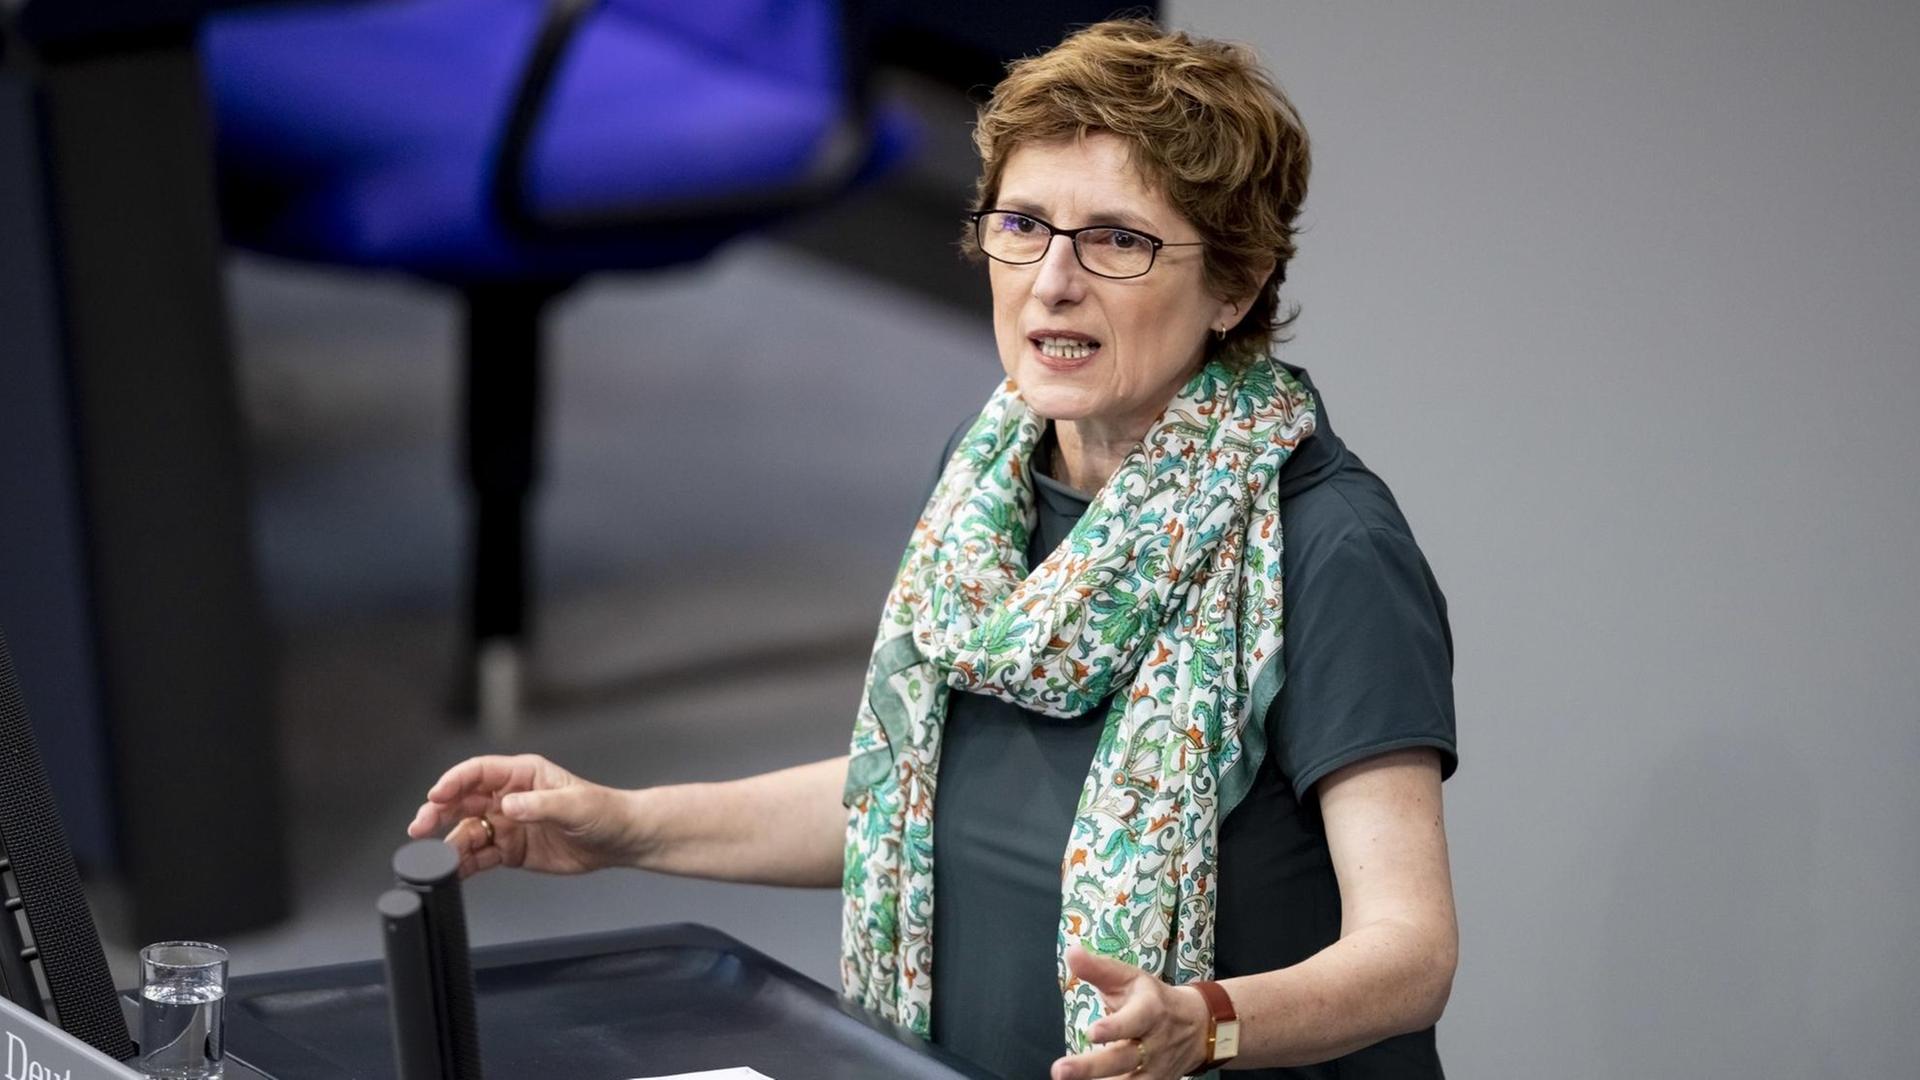 Britta Haßelmann, Erste Parlamentarische Geschäftsführerin der Bundestagsfraktion von Bündnis 90/Die Grünen